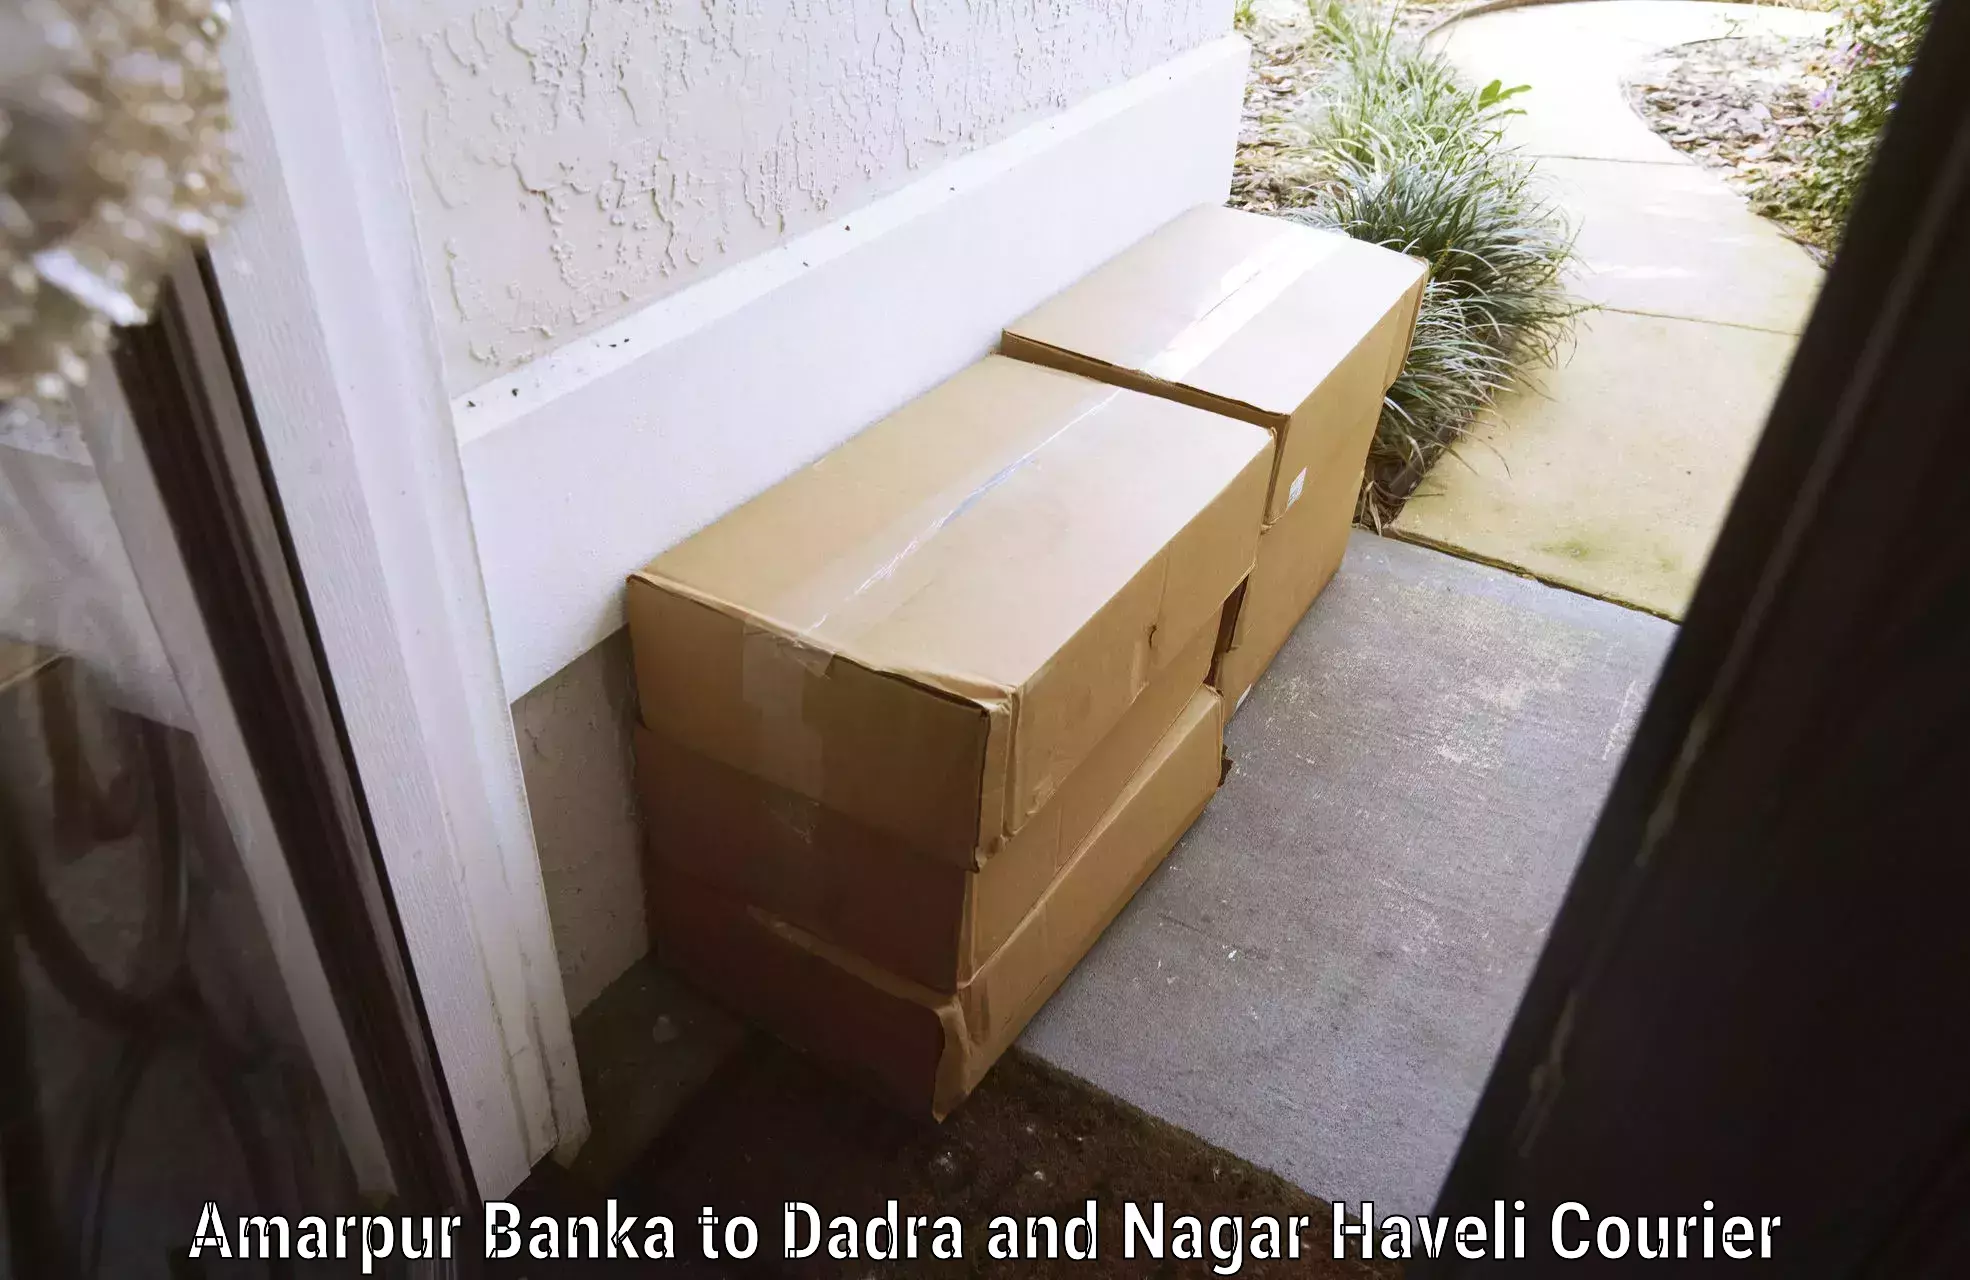 Baggage delivery solutions Amarpur Banka to Dadra and Nagar Haveli